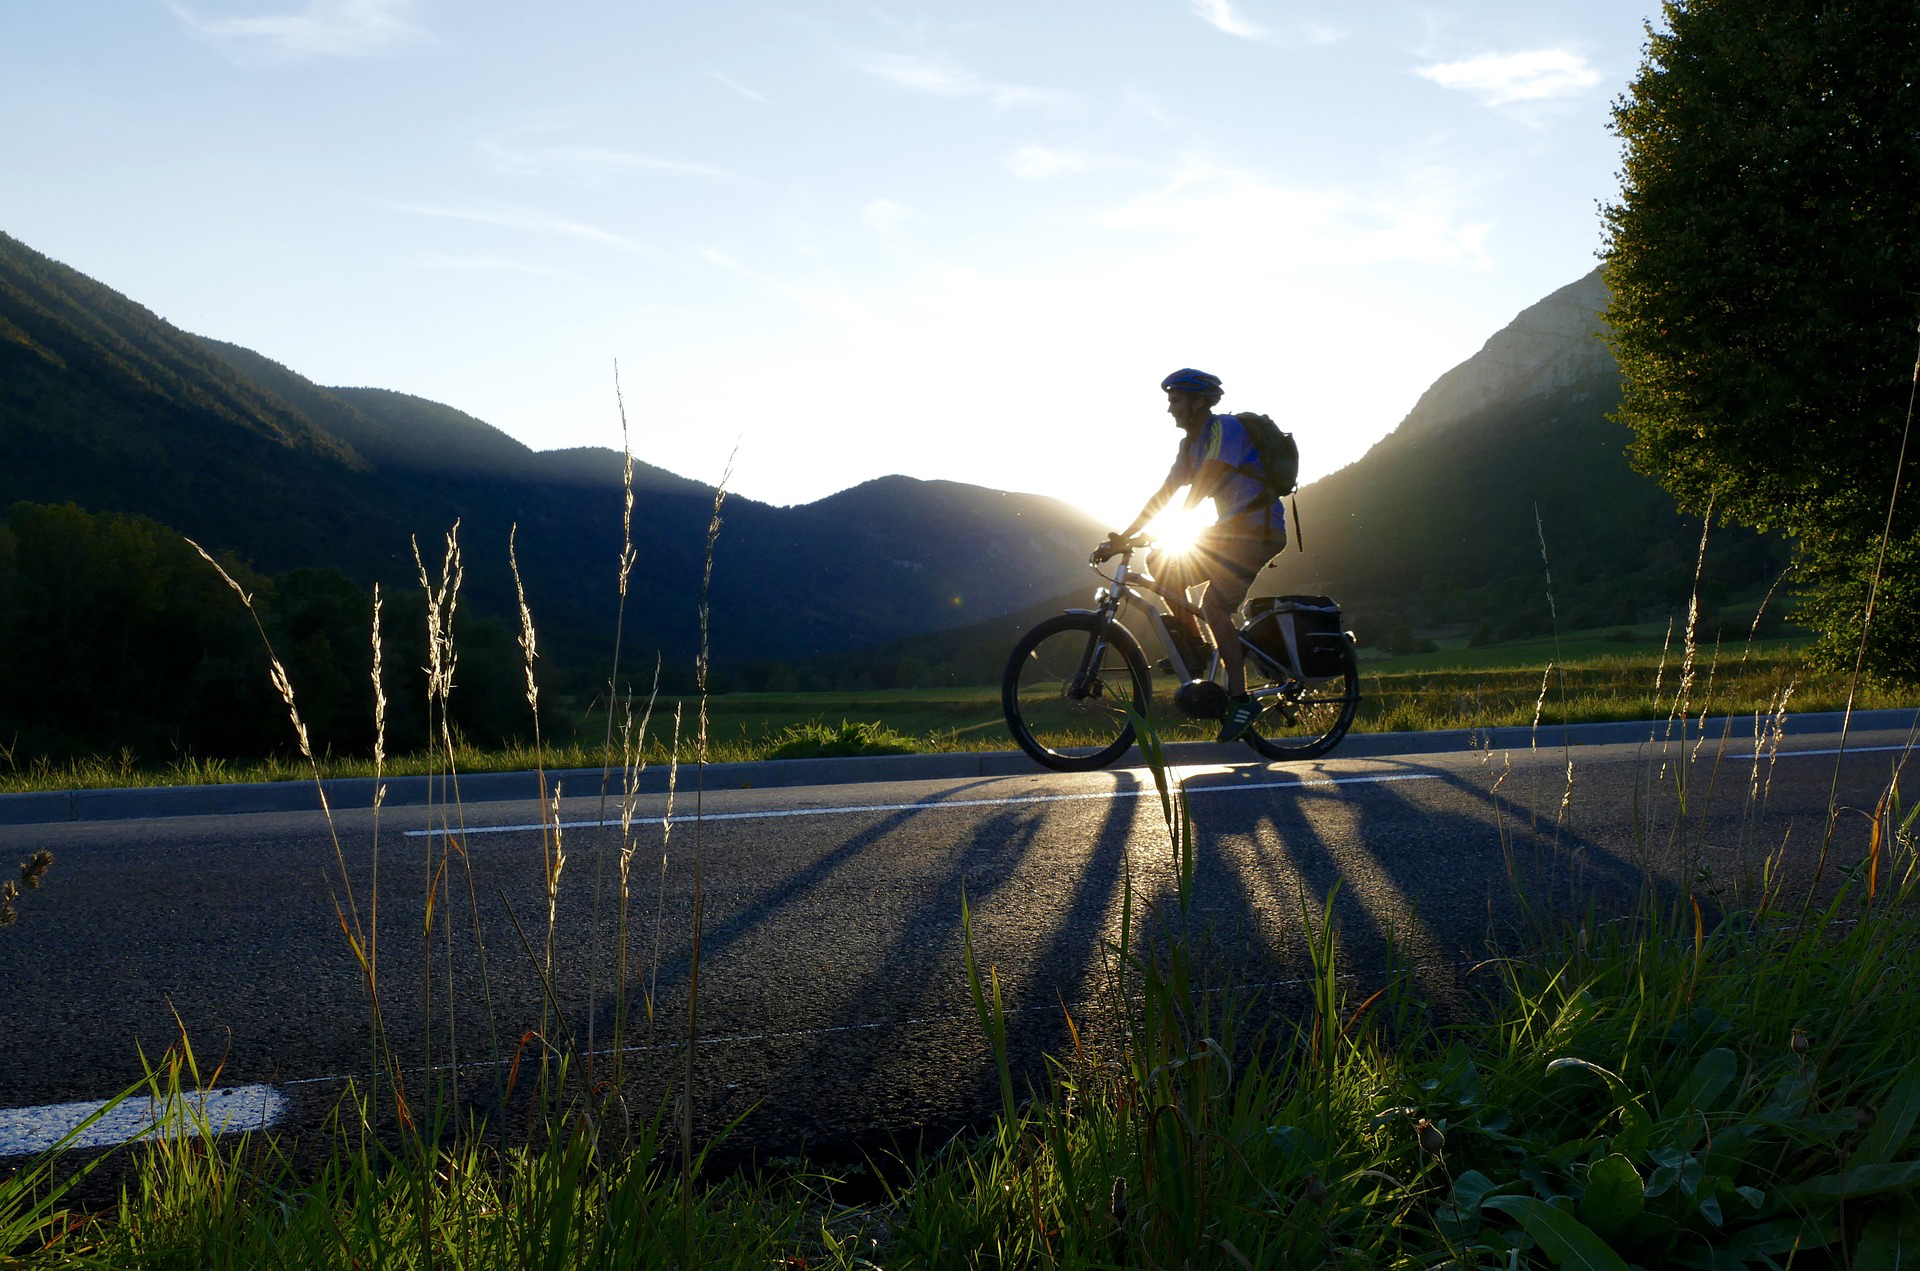 Montar bicicletas puede traer múltiples beneficios para la salud, tanto física como mental.